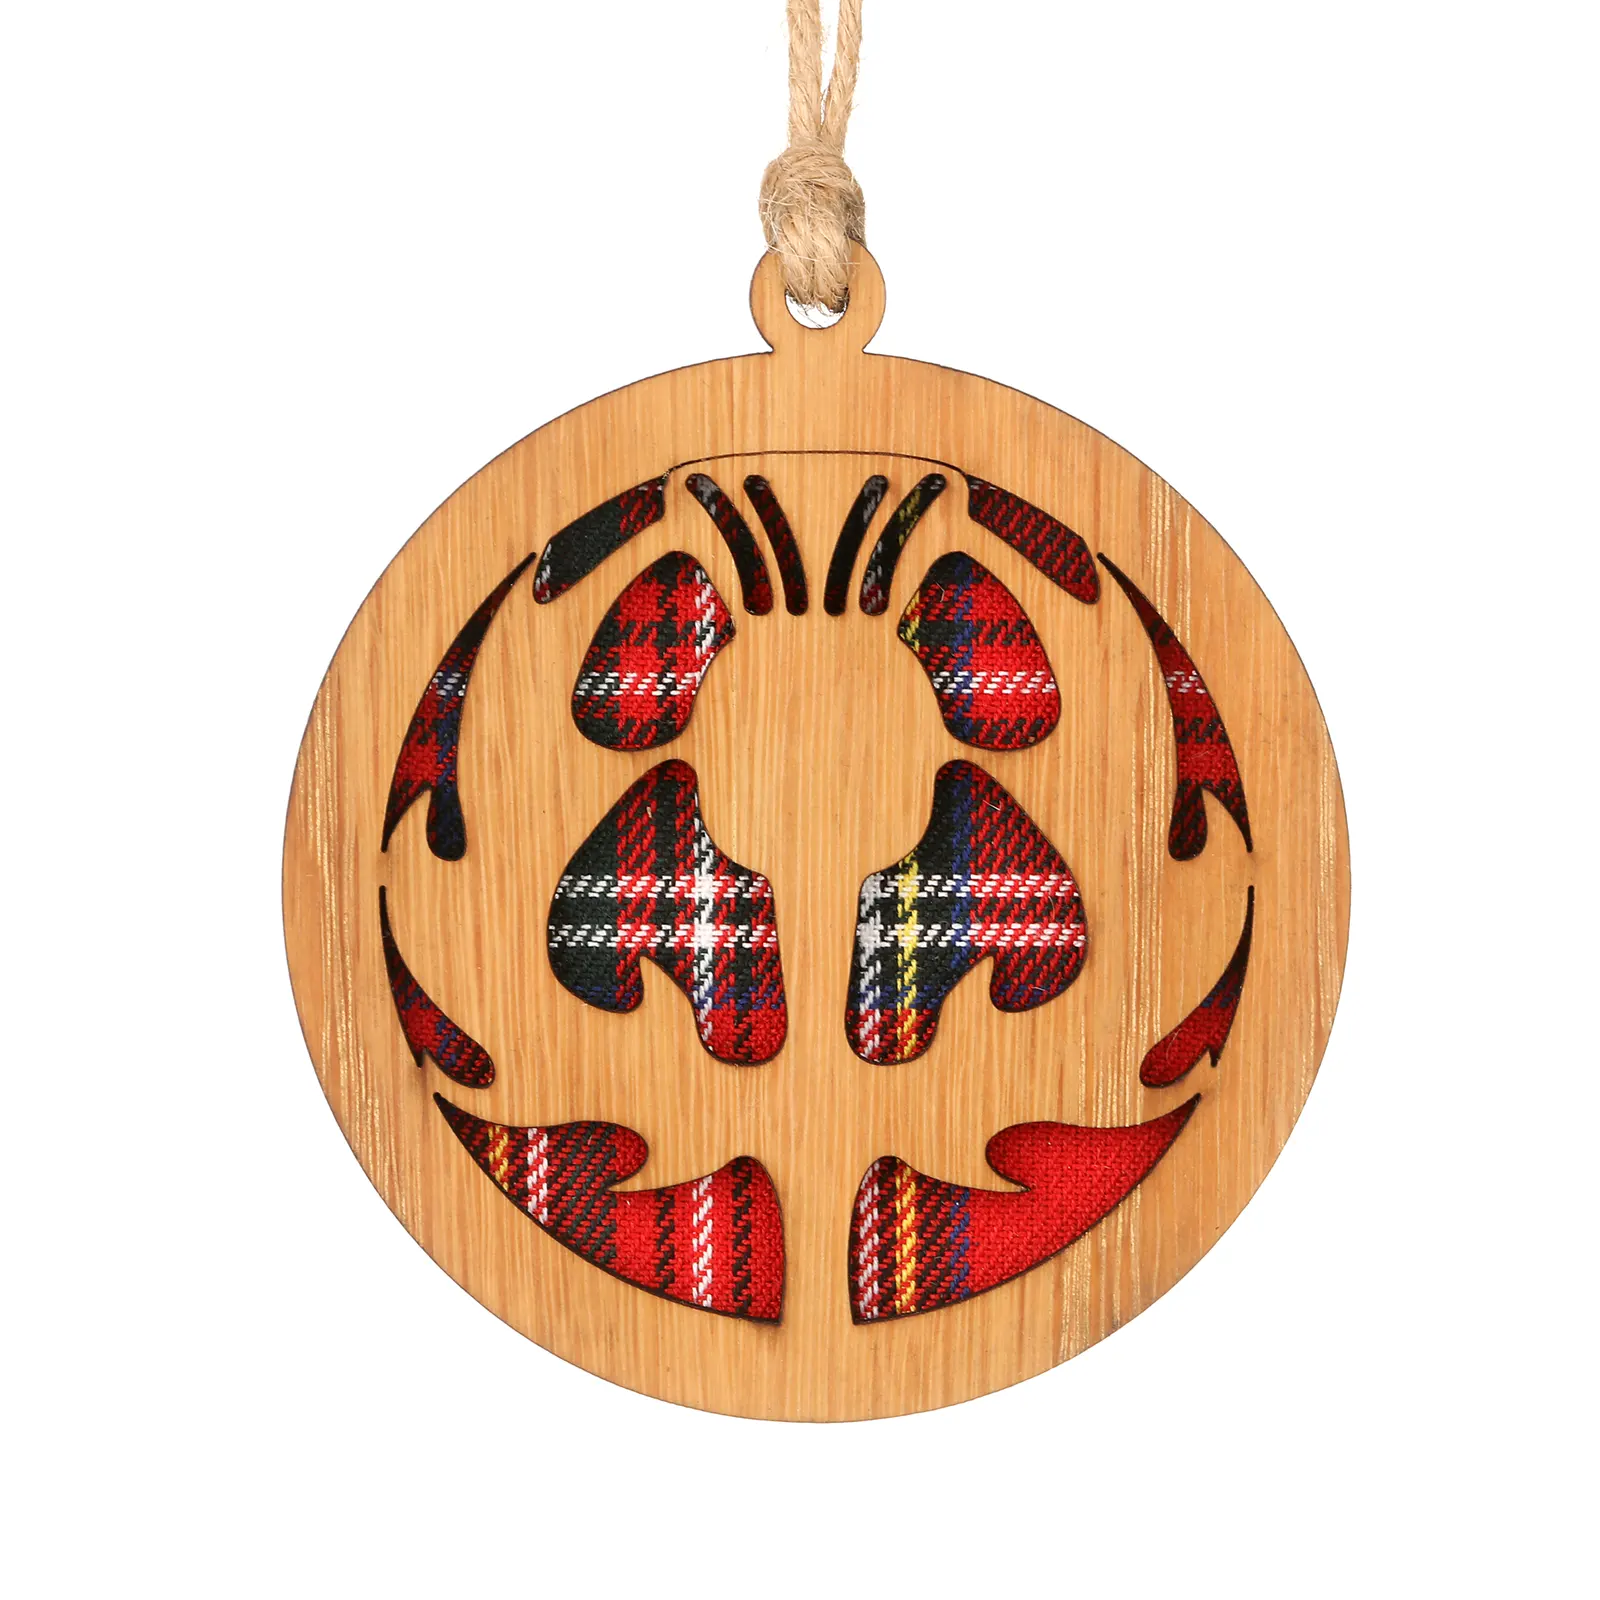 Scottish Thistle - Runder Holz-Aufhänger mit schottischer Distel und Tartan-Hintergrund